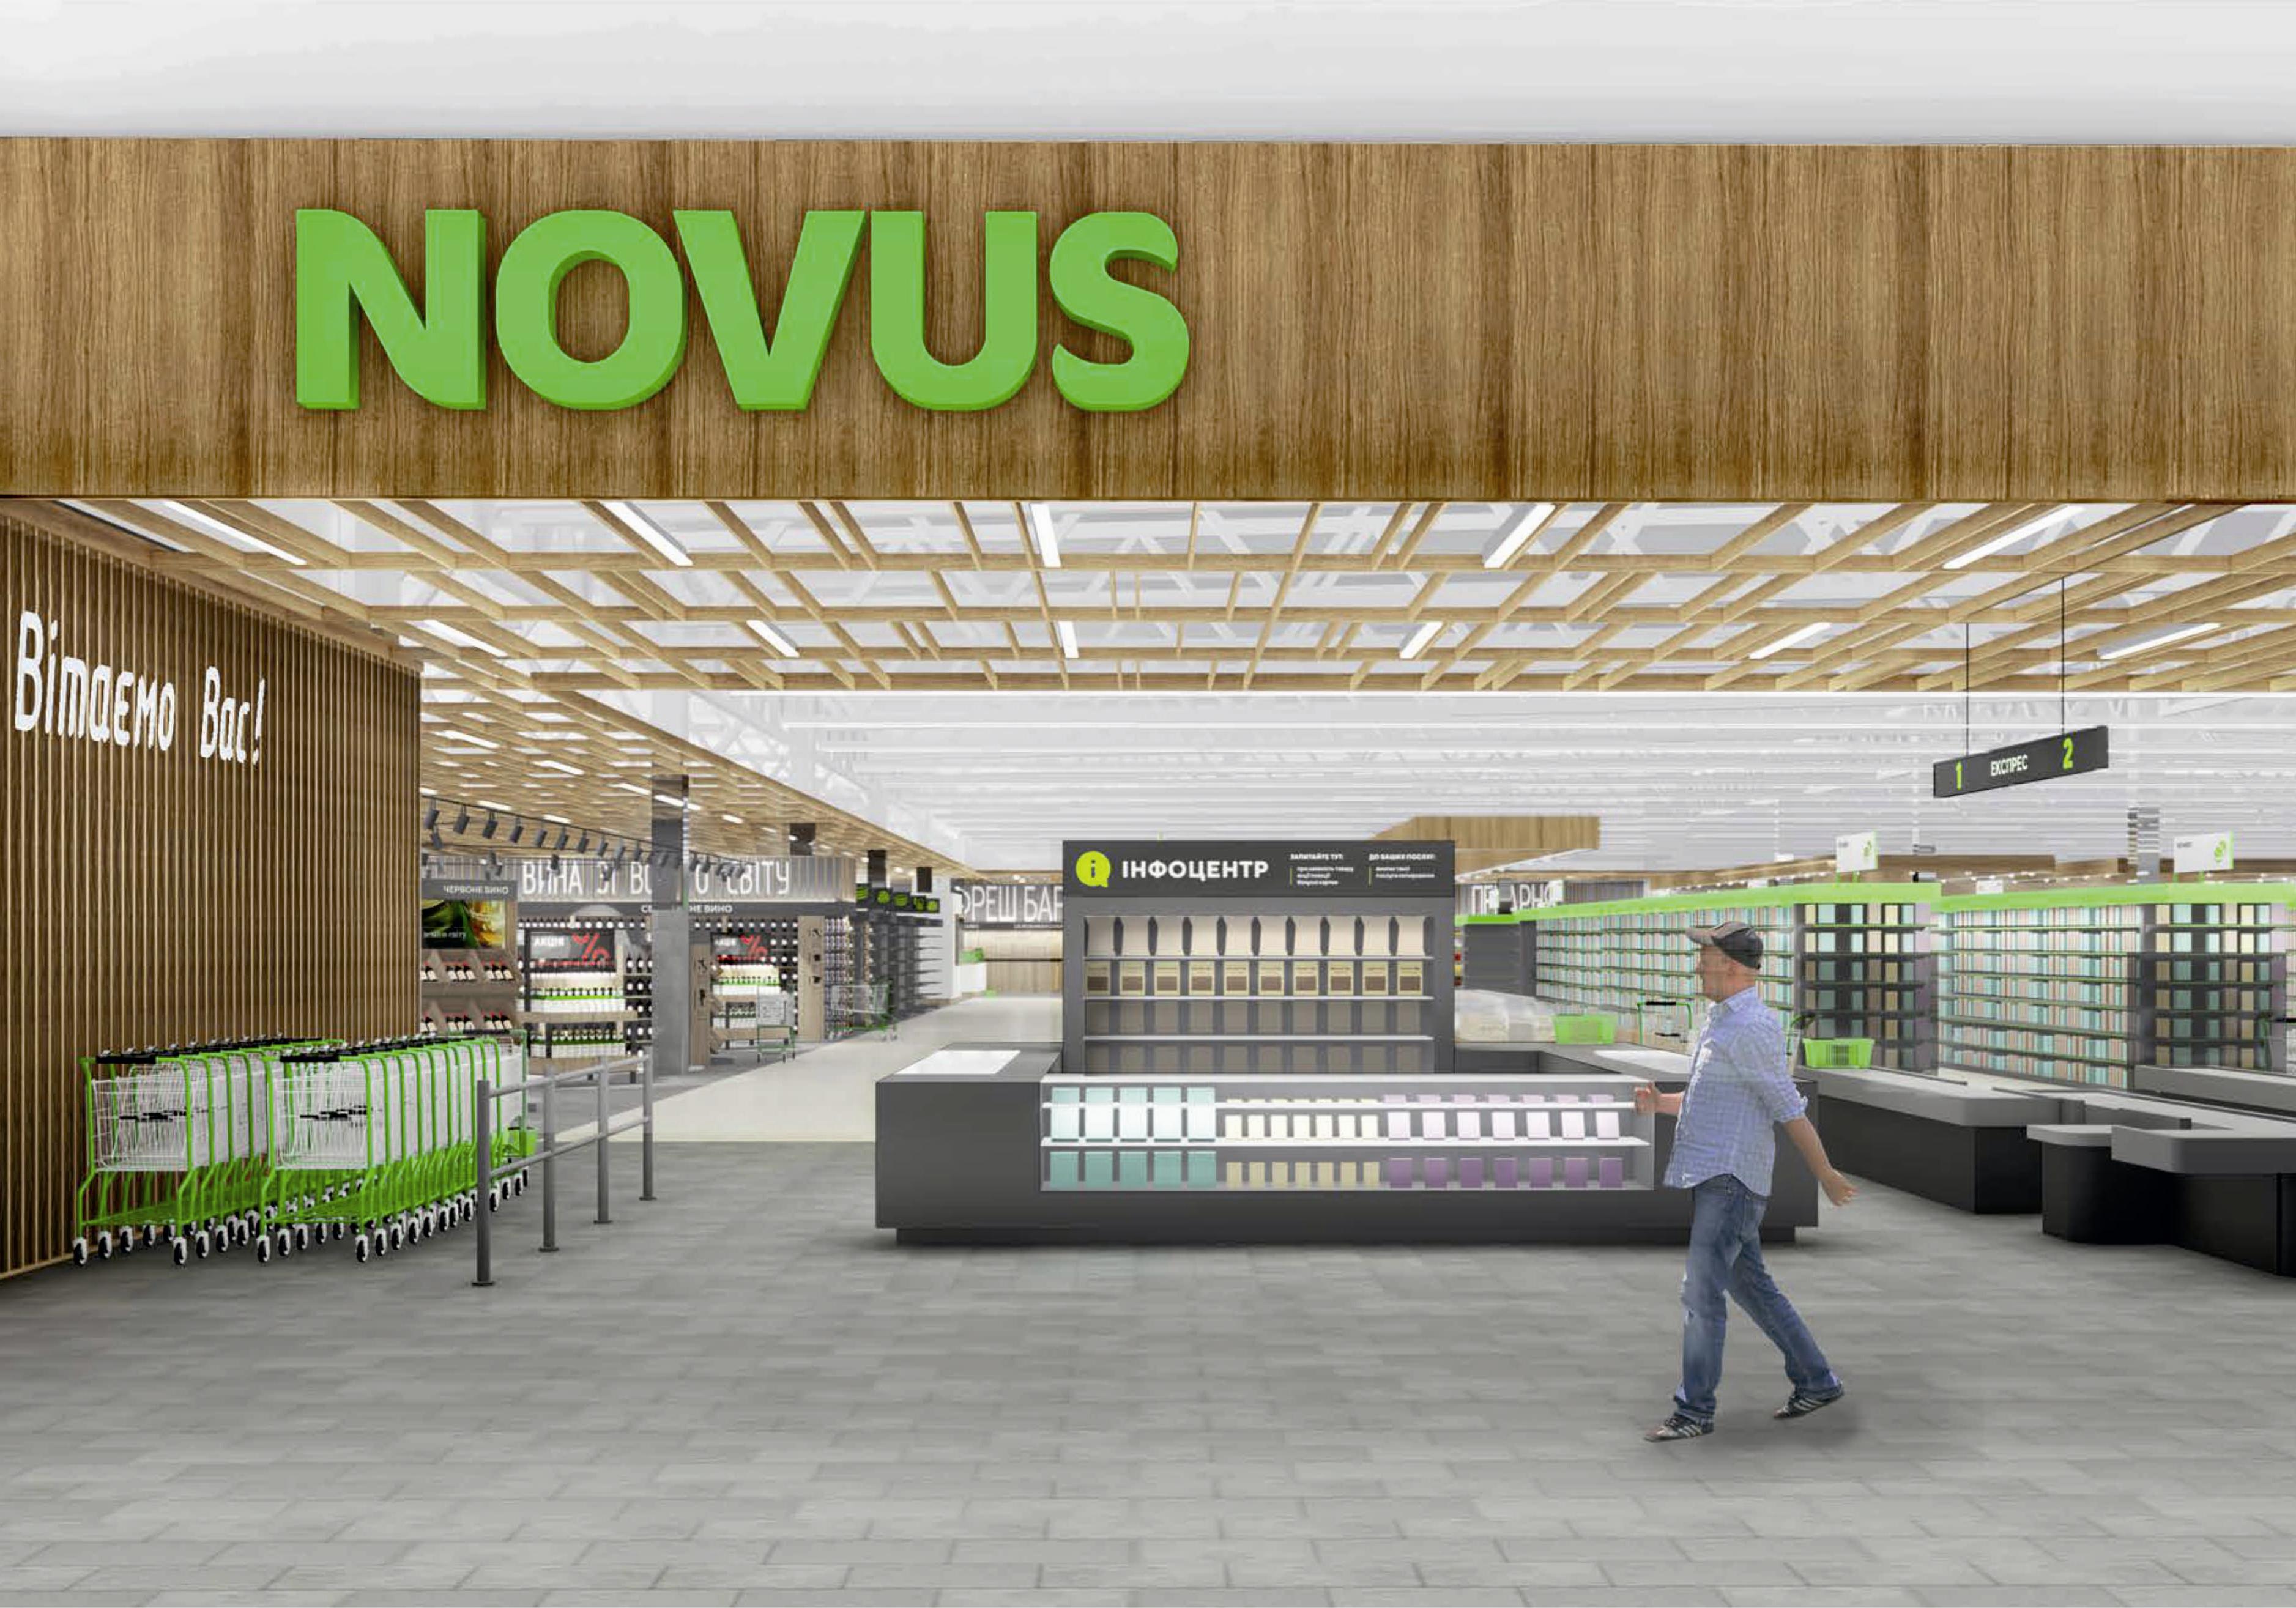 Новость - Общество - В ассортименте супермаркета NOVUS в Sky Mall будет 50 000 товаров